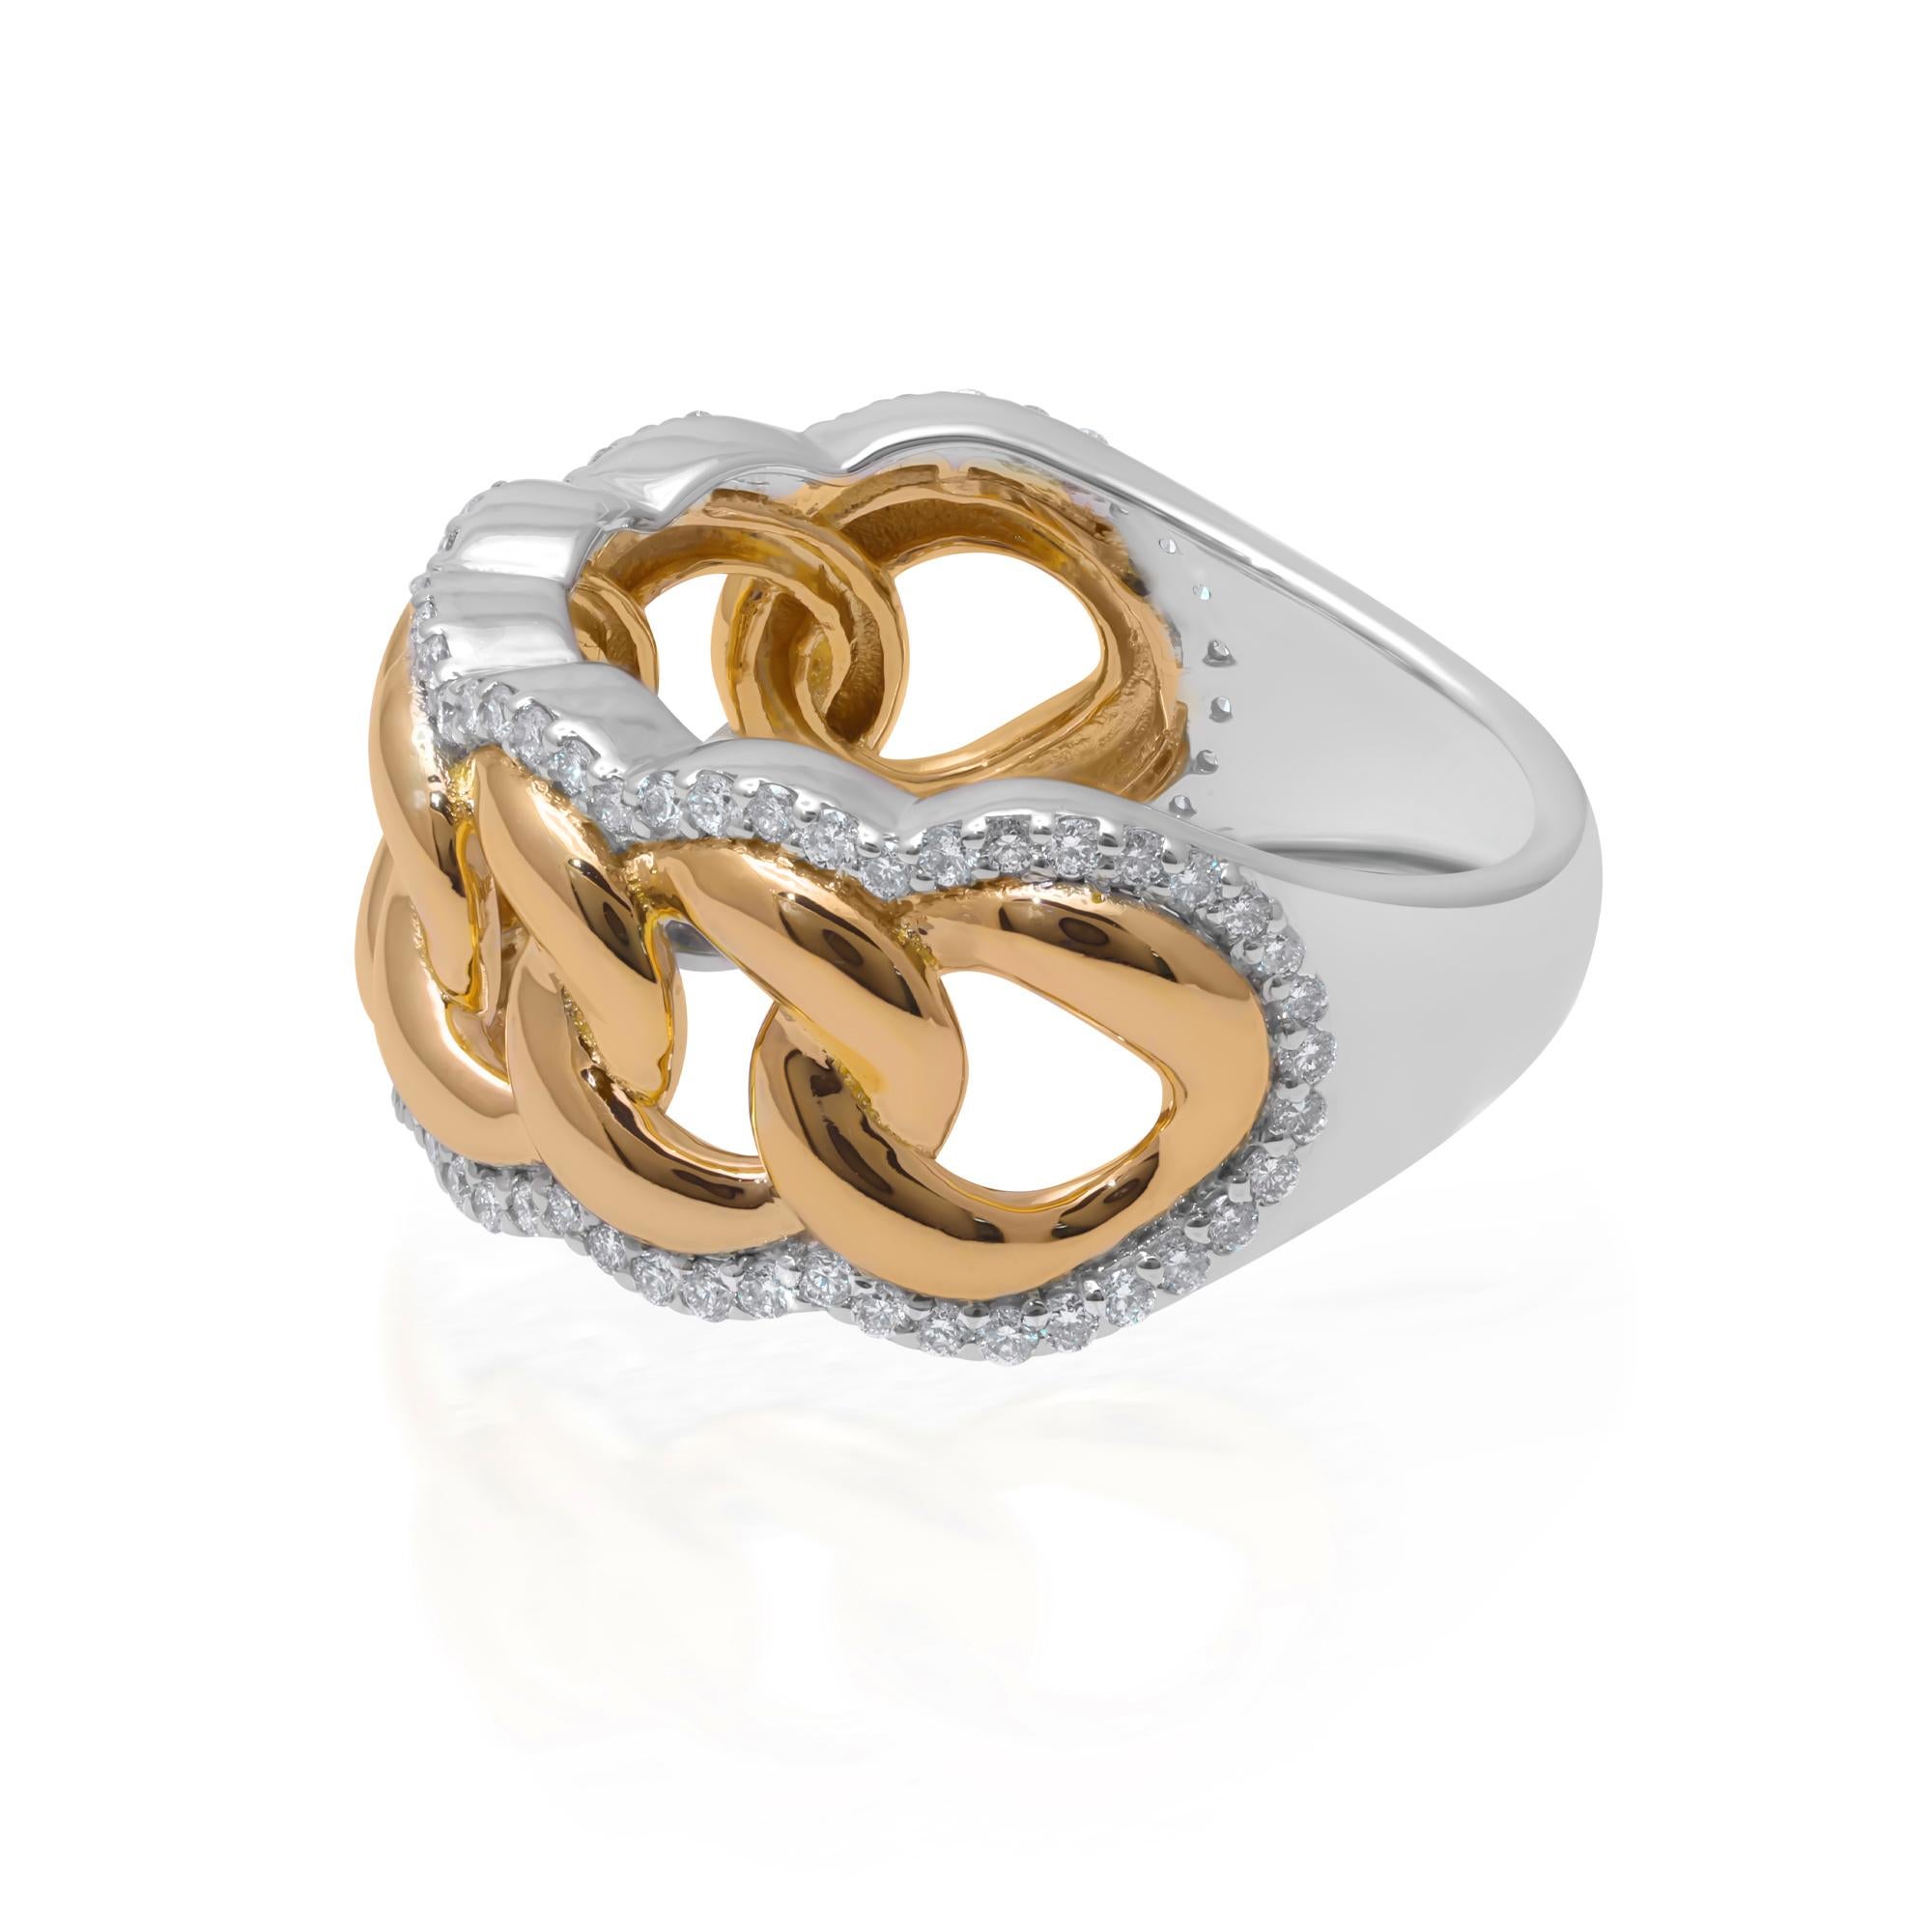 Das kubanische Gliederkettenmotiv, ein Symbol für Stärke und Einheit, ziert das Ringband und verleiht dem zeitlos eleganten Ring einen Hauch von urbanem Chic. Mit Präzision und Liebe zum Detail gefertigt, ist jedes Glied sorgfältig geformt und